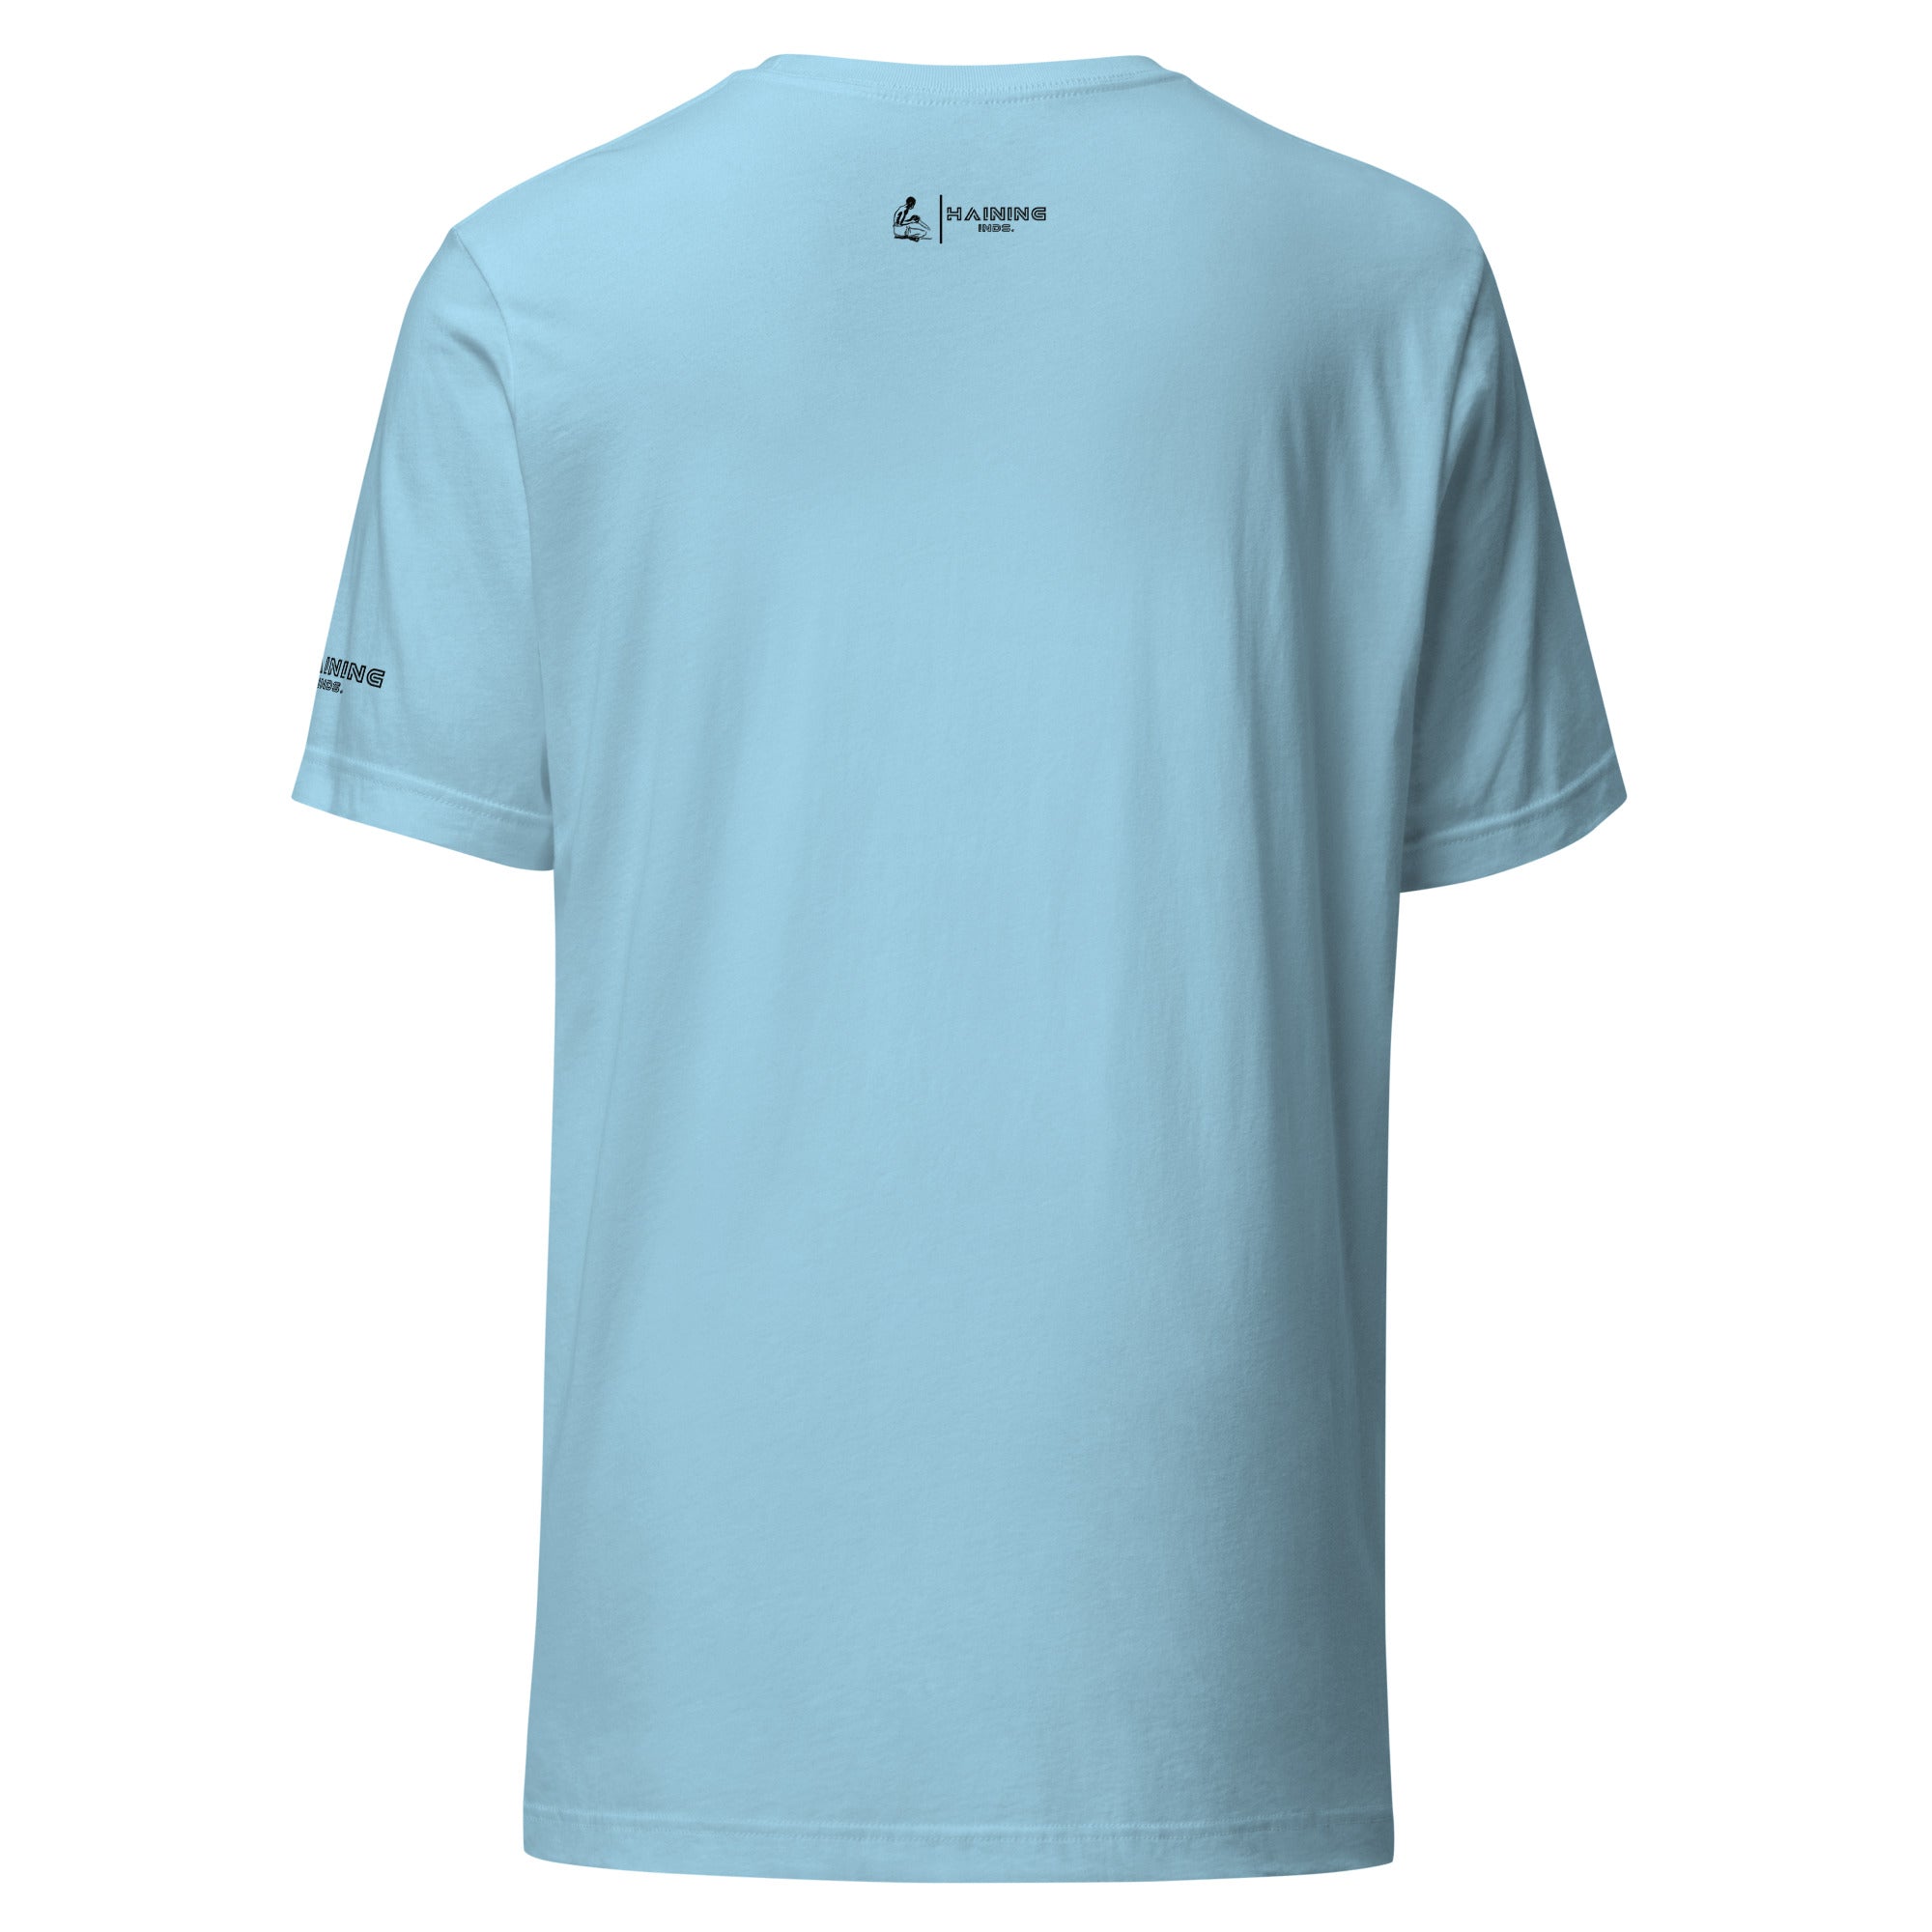 Natural Skater - Unisex t-shirt